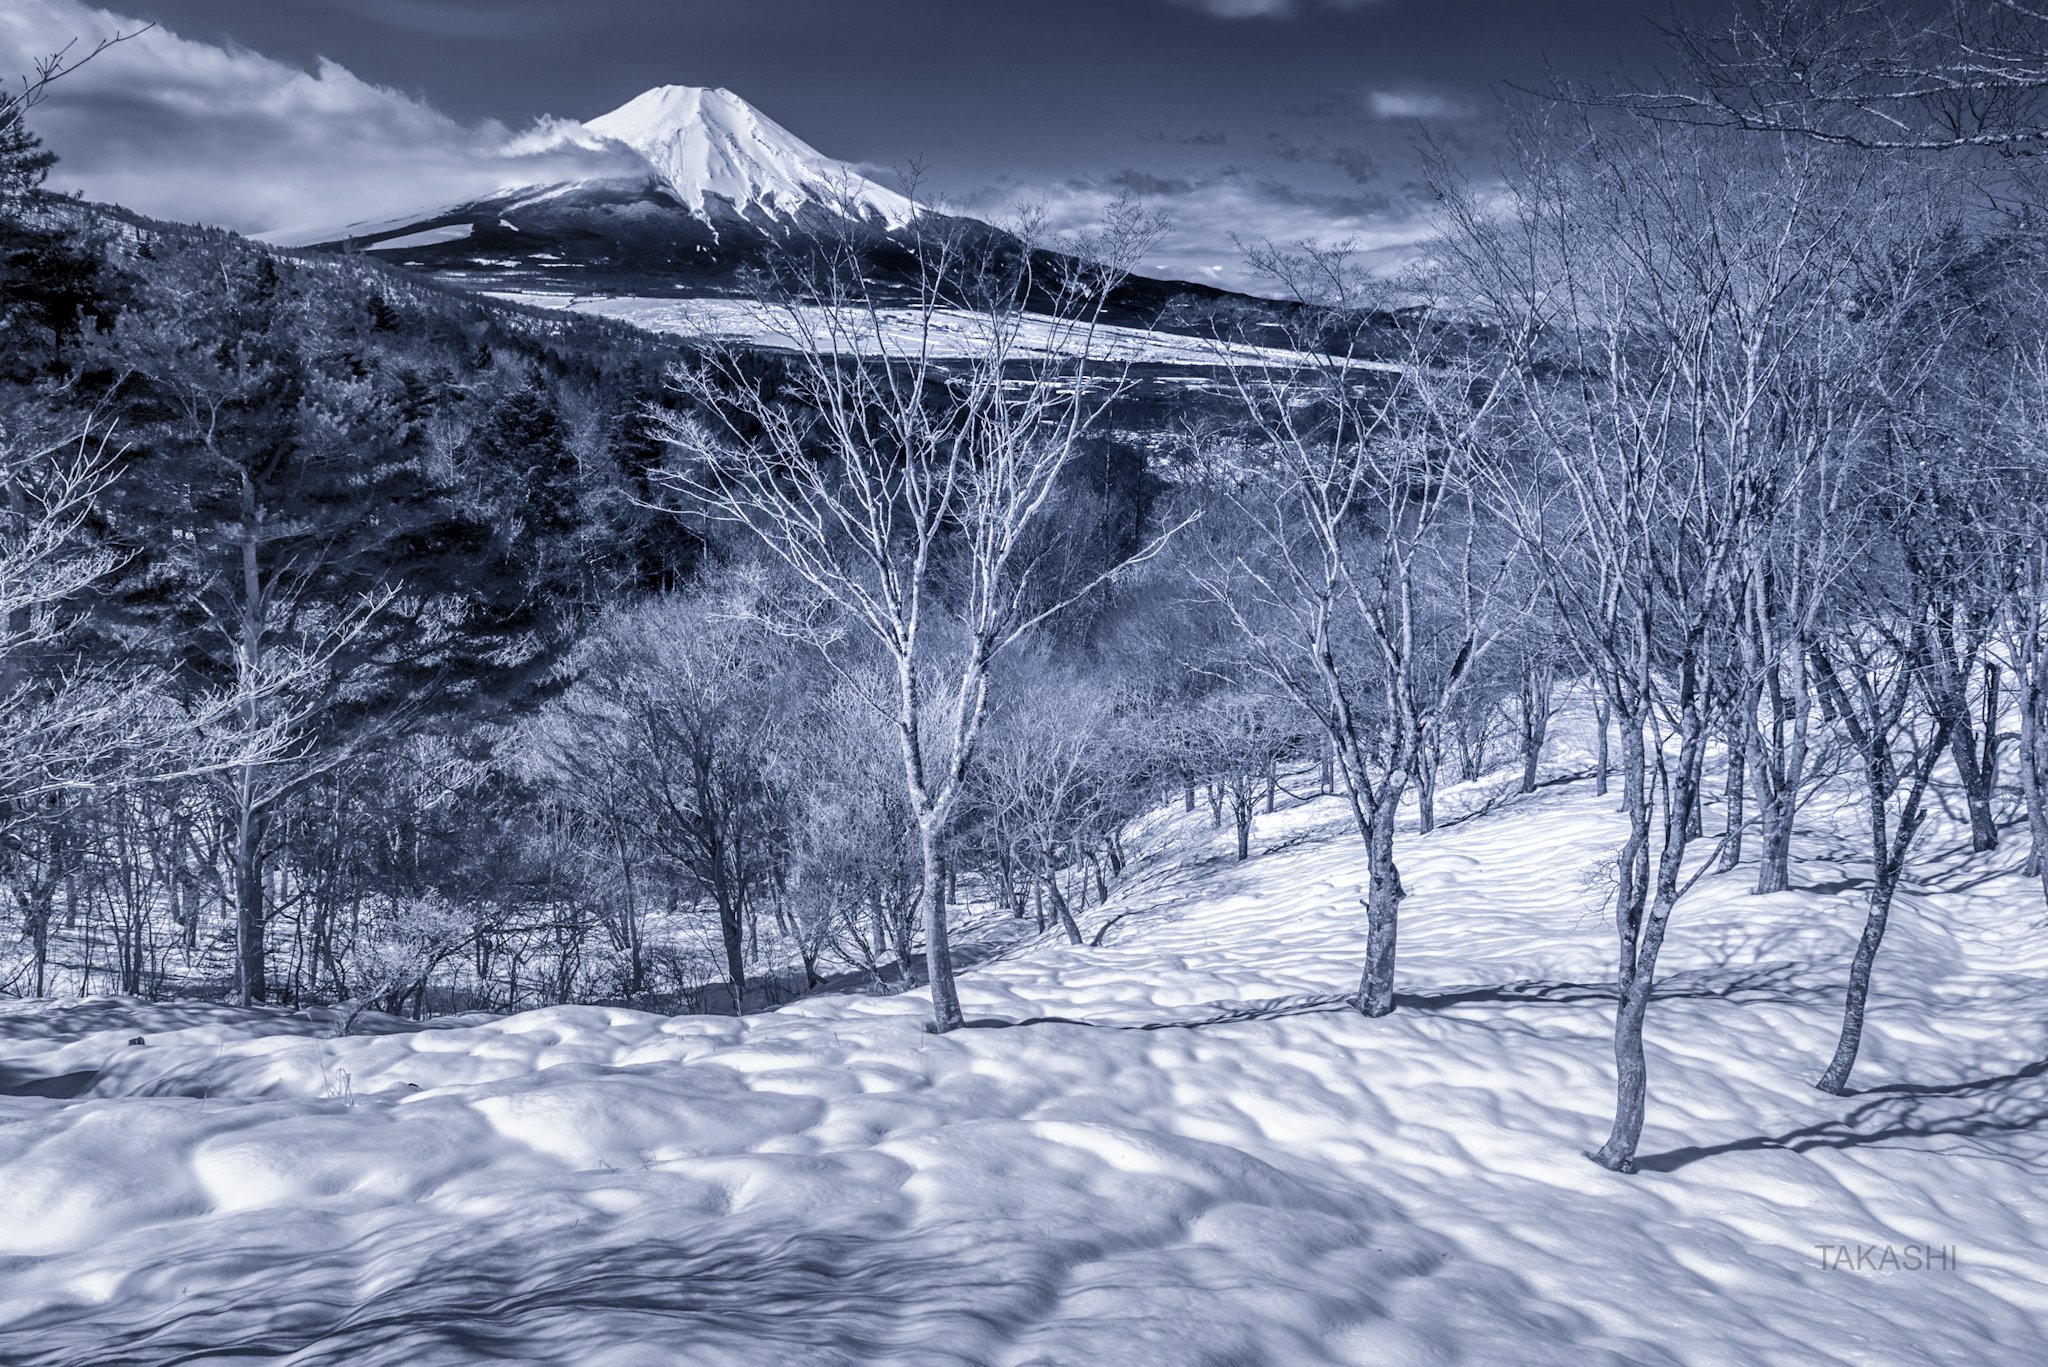 Fuji,mountain,Japan,snow,spring,morning,trees,wonderful,beautiful, Takashi